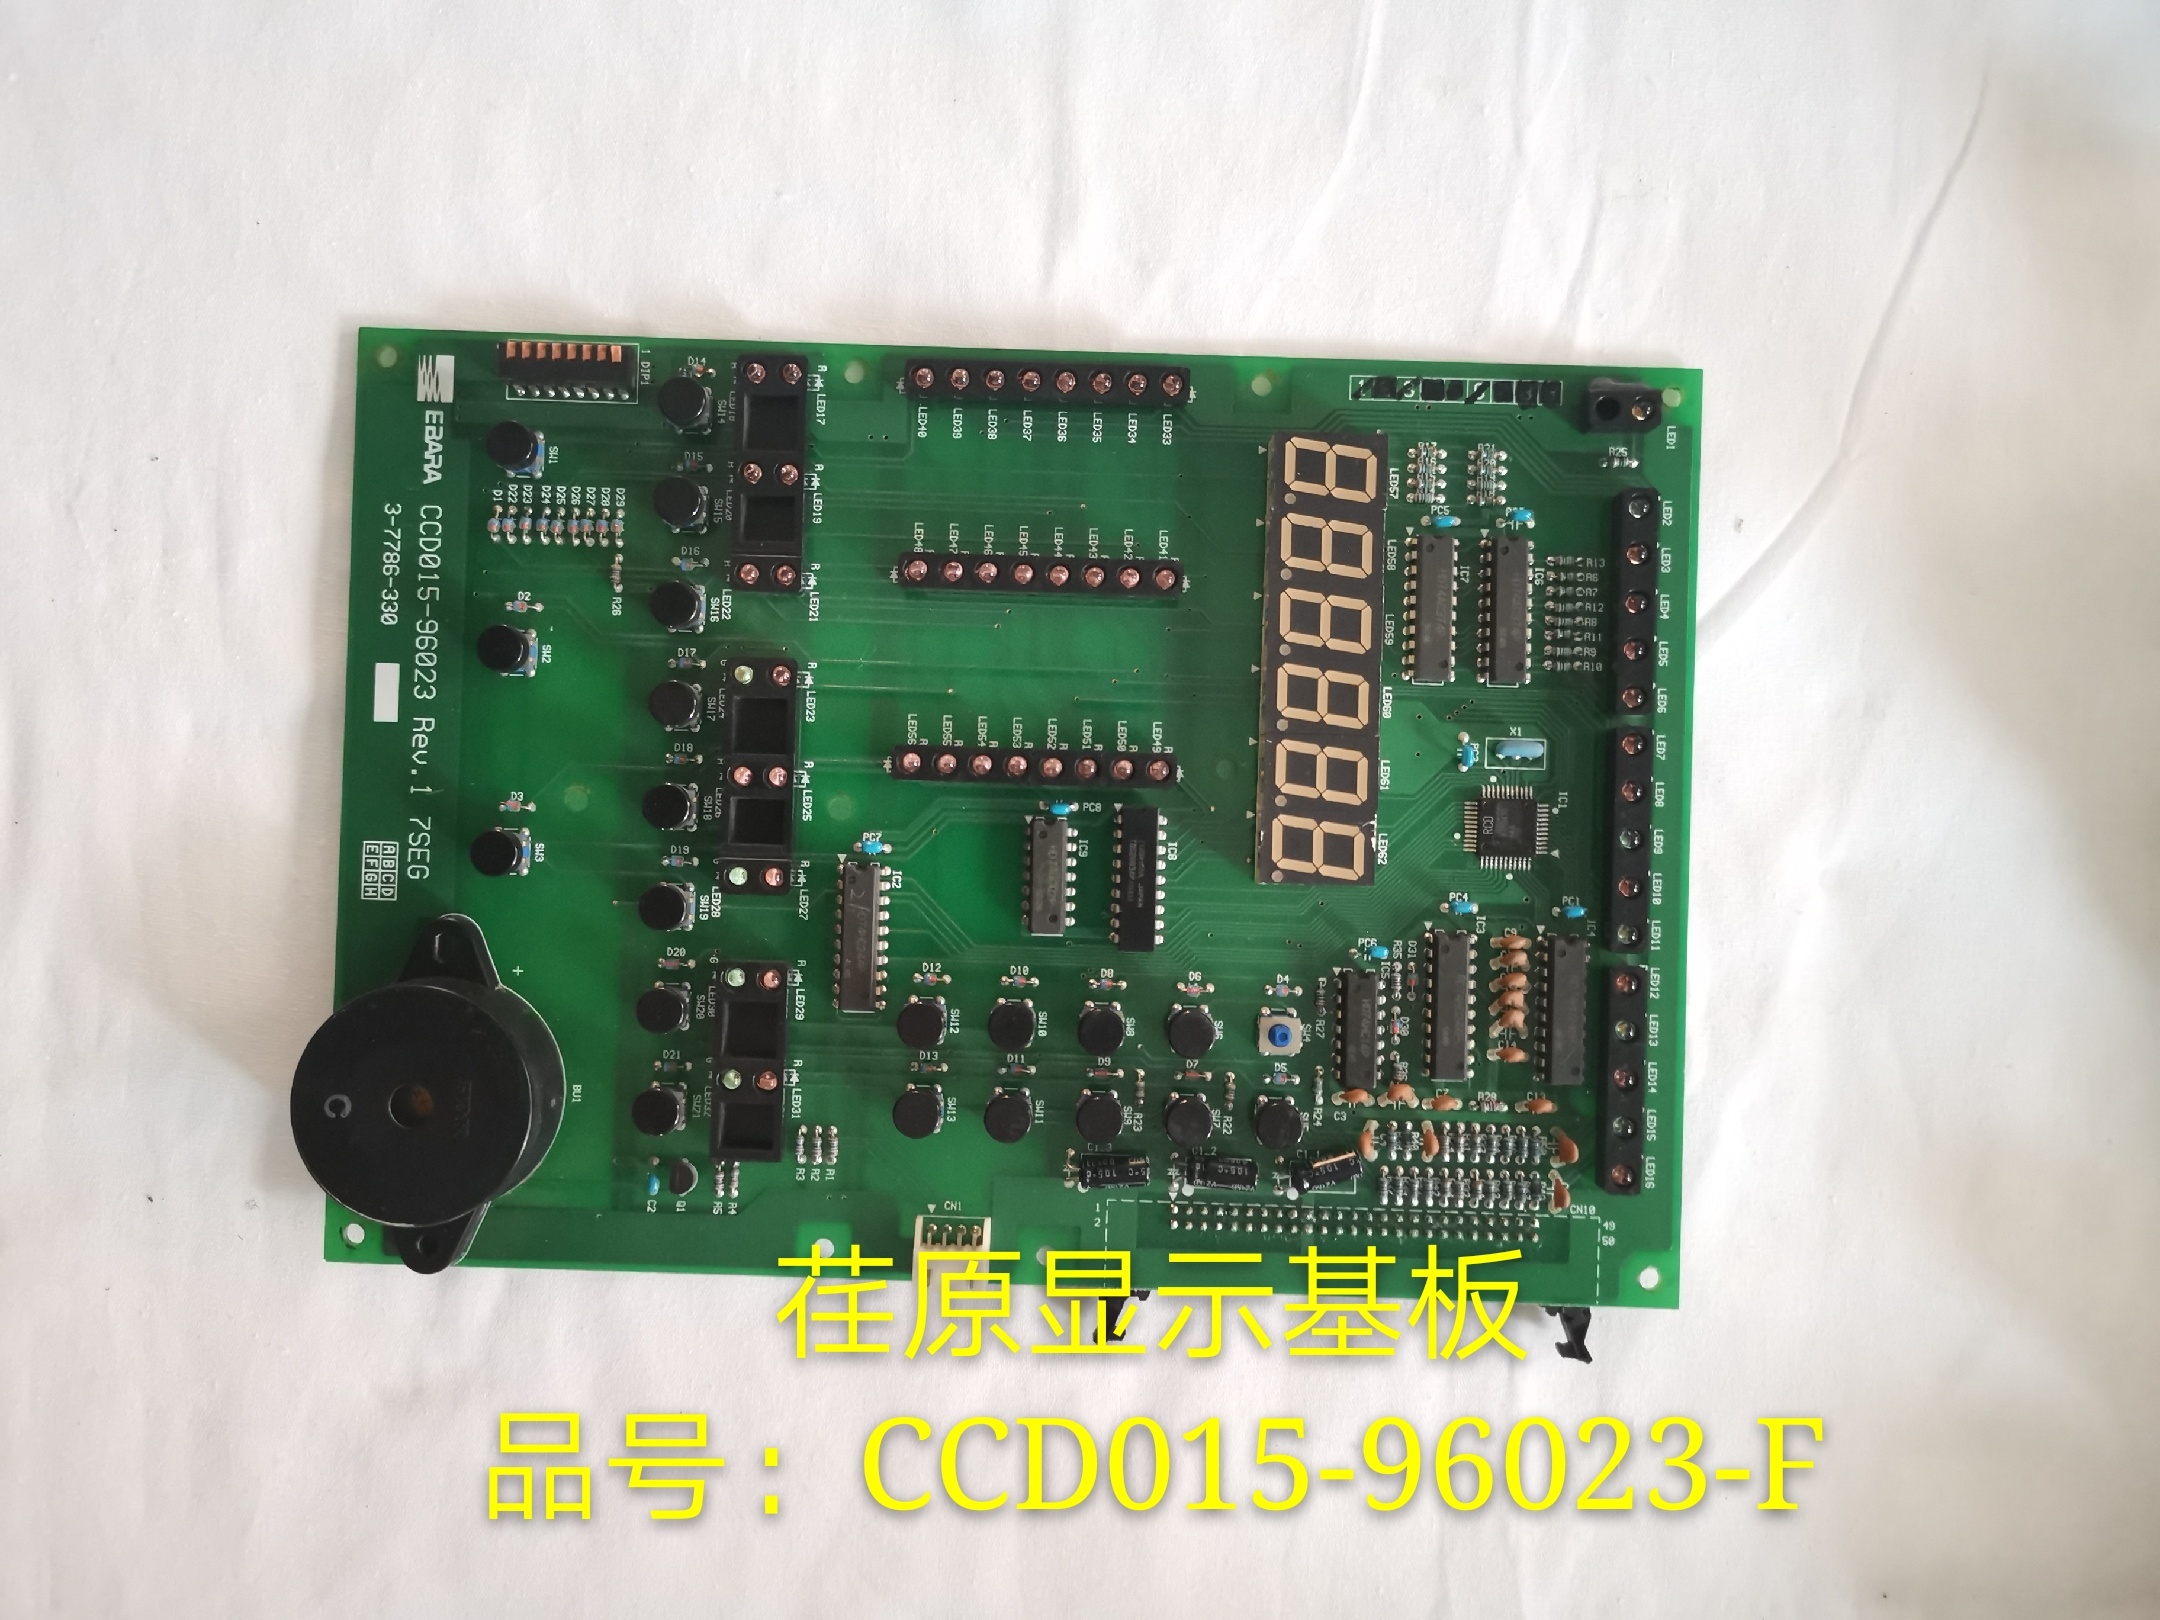 荏原顯示基板  品號: CCD015-96023-F